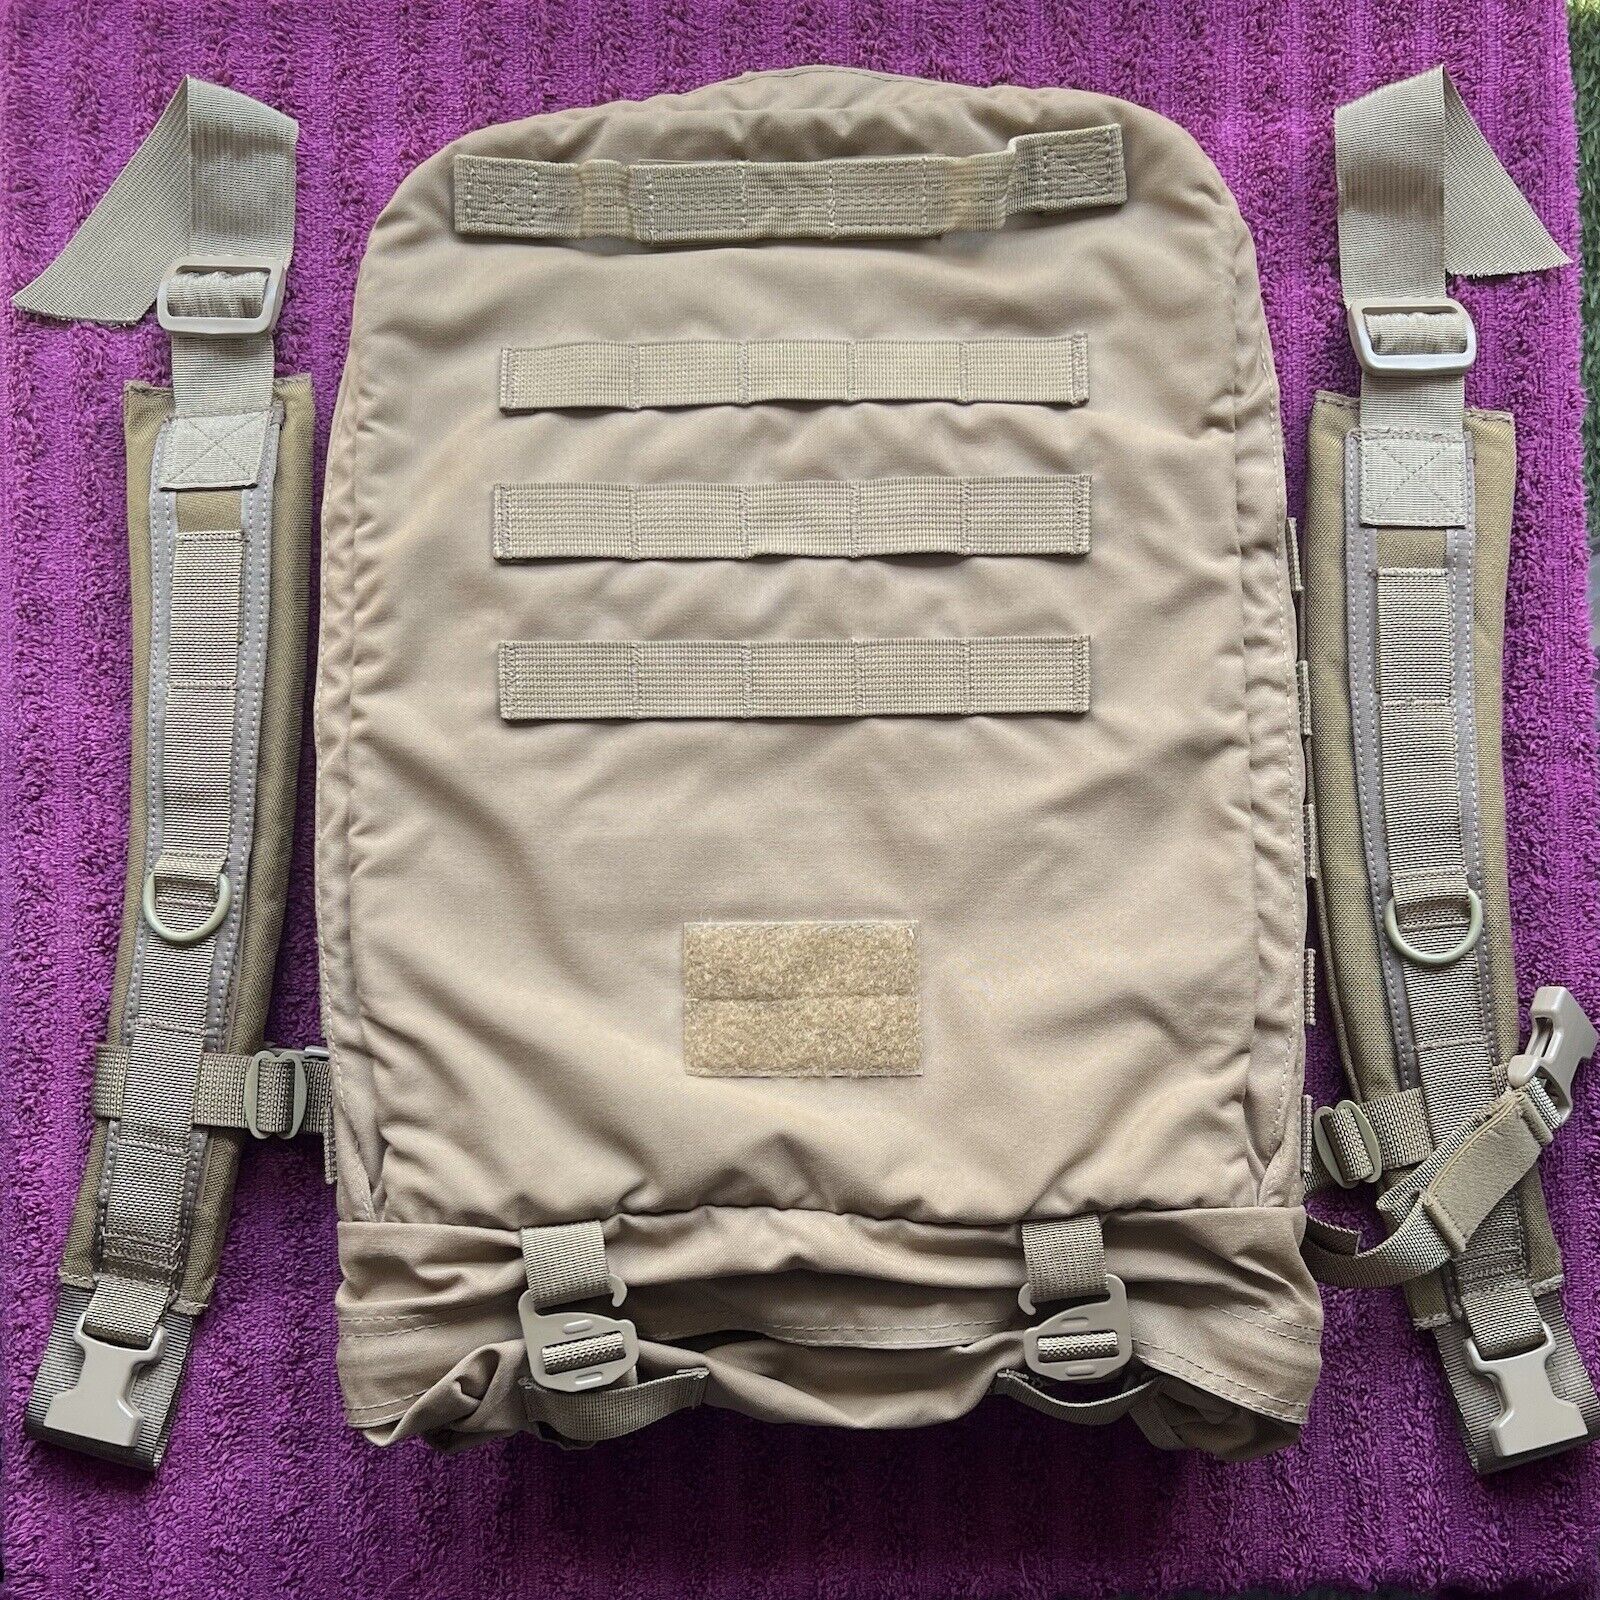 TSSI TACOPS M9 Slimline 500D Assault Medic Backpack Bag - Coyote Brown